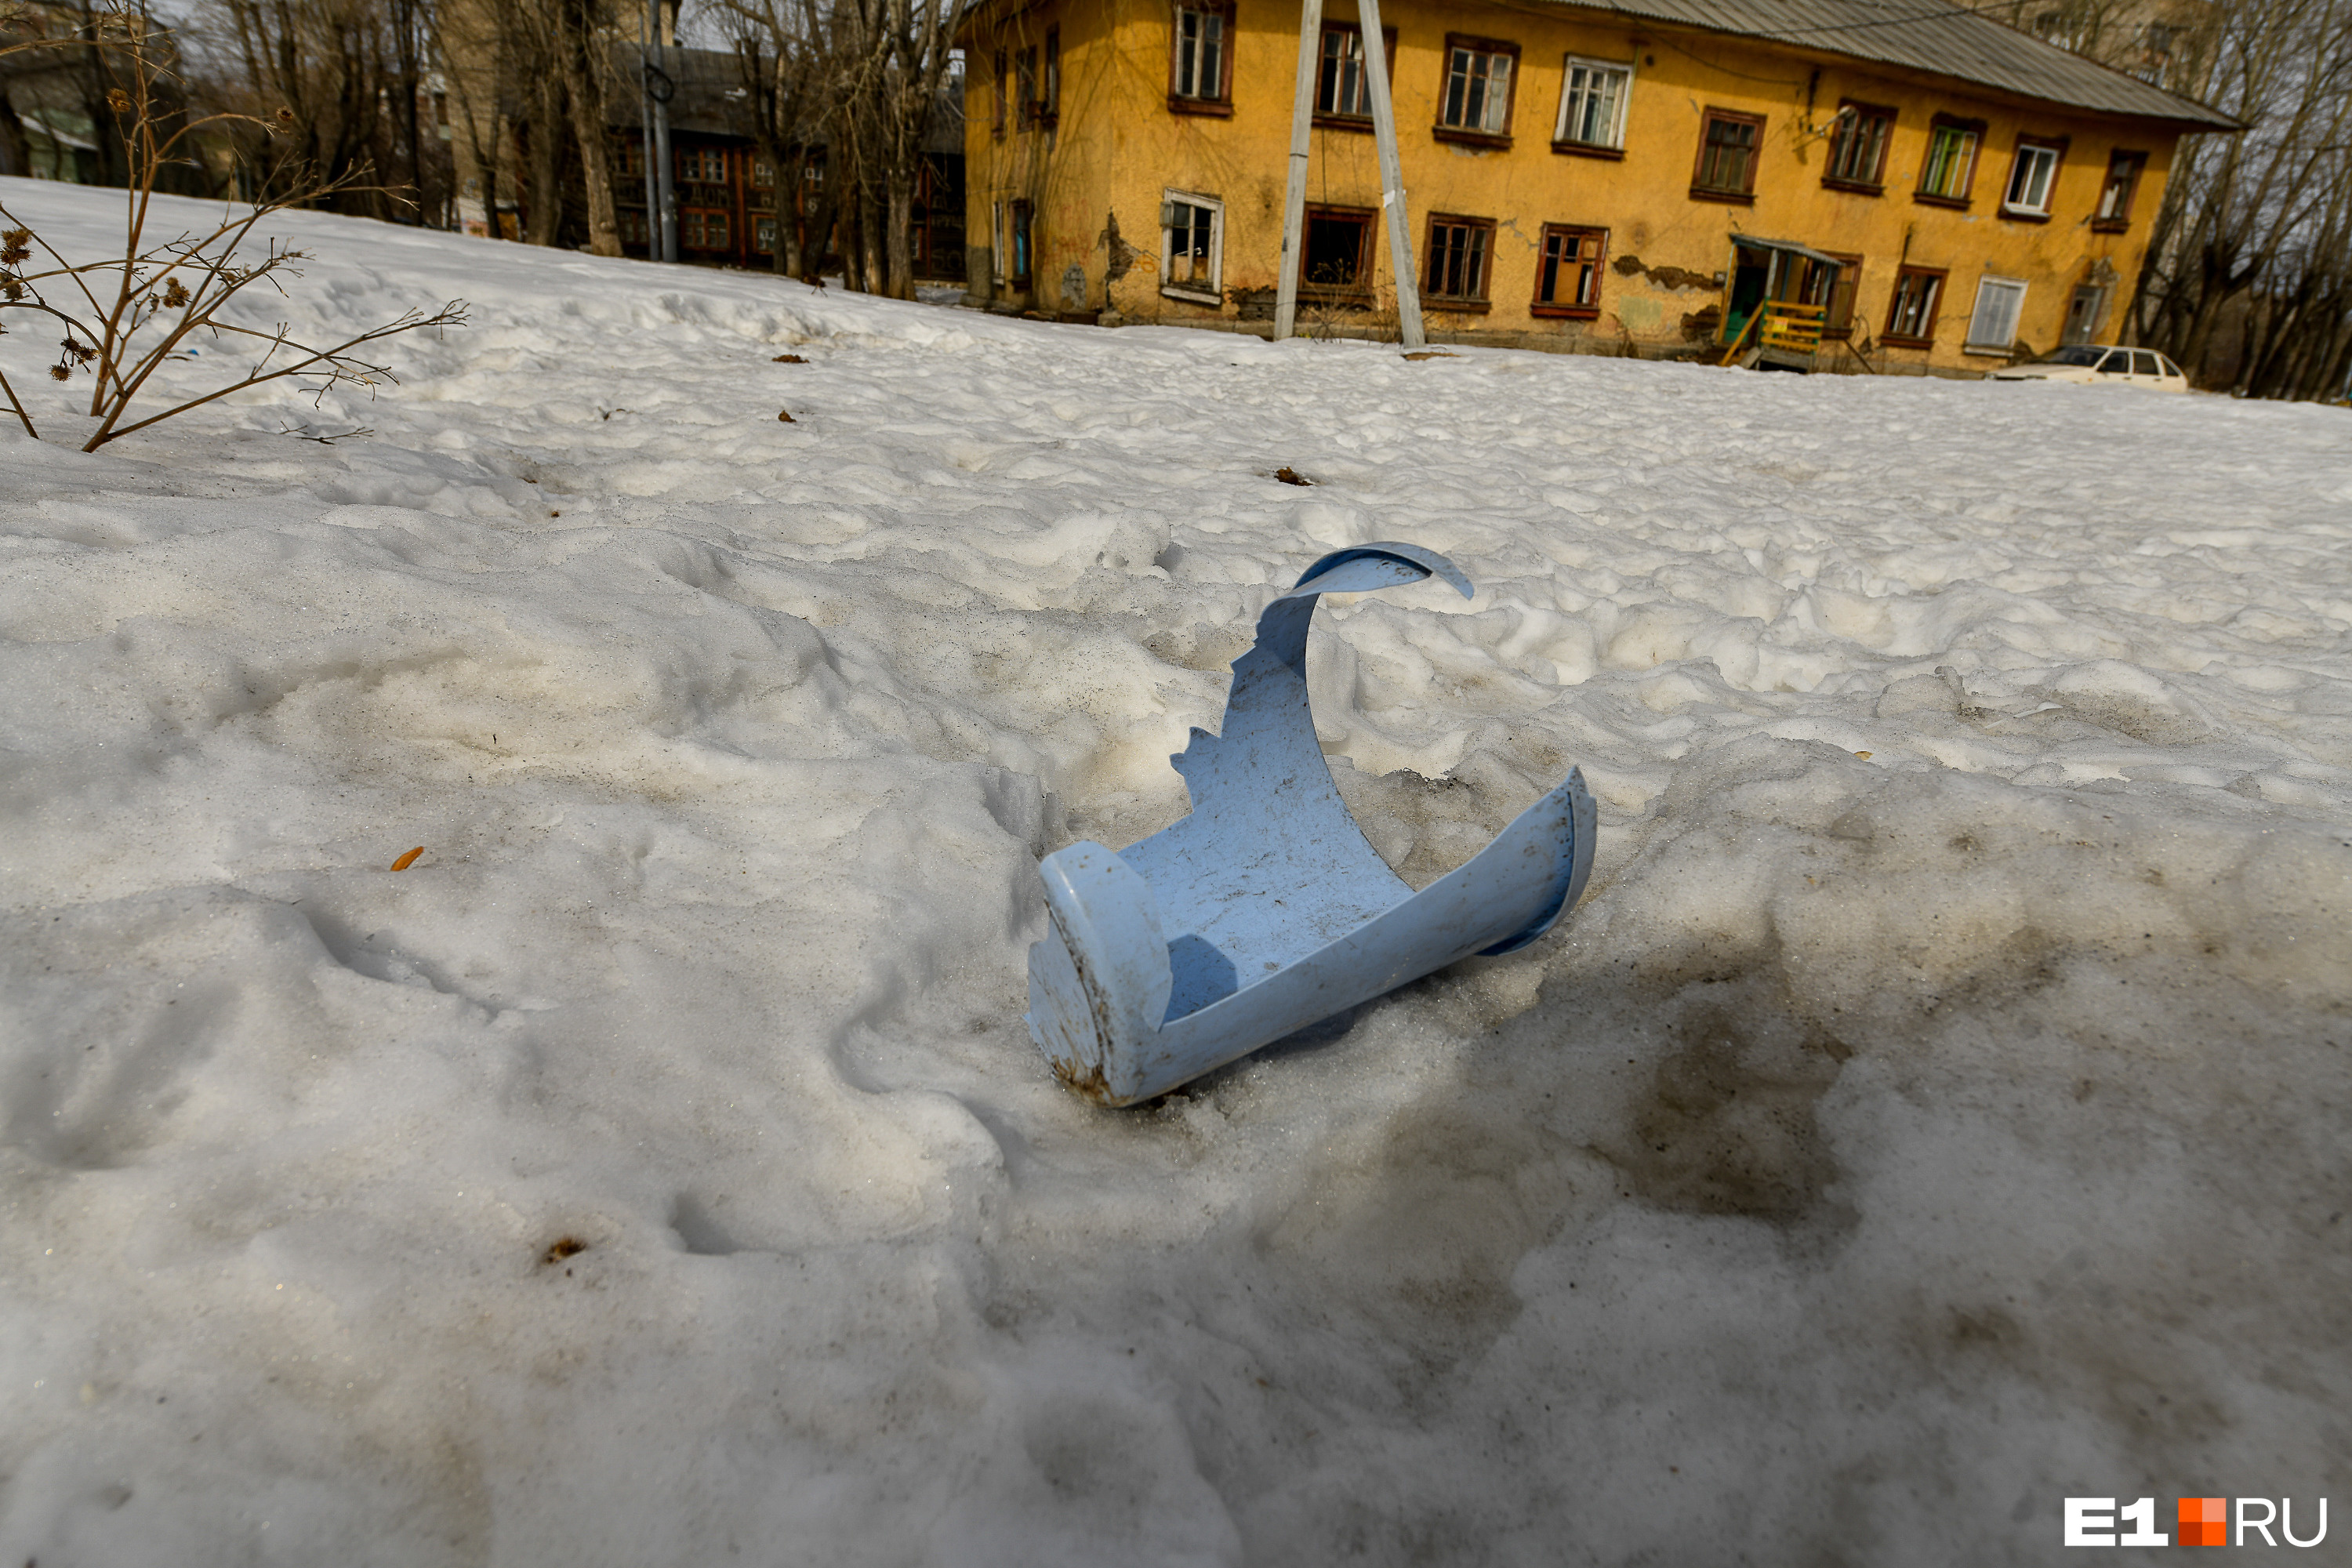 Николай Смирнов считает, что вывезти снег из двора — это не так уж дорого, но скинуться должны жильцы